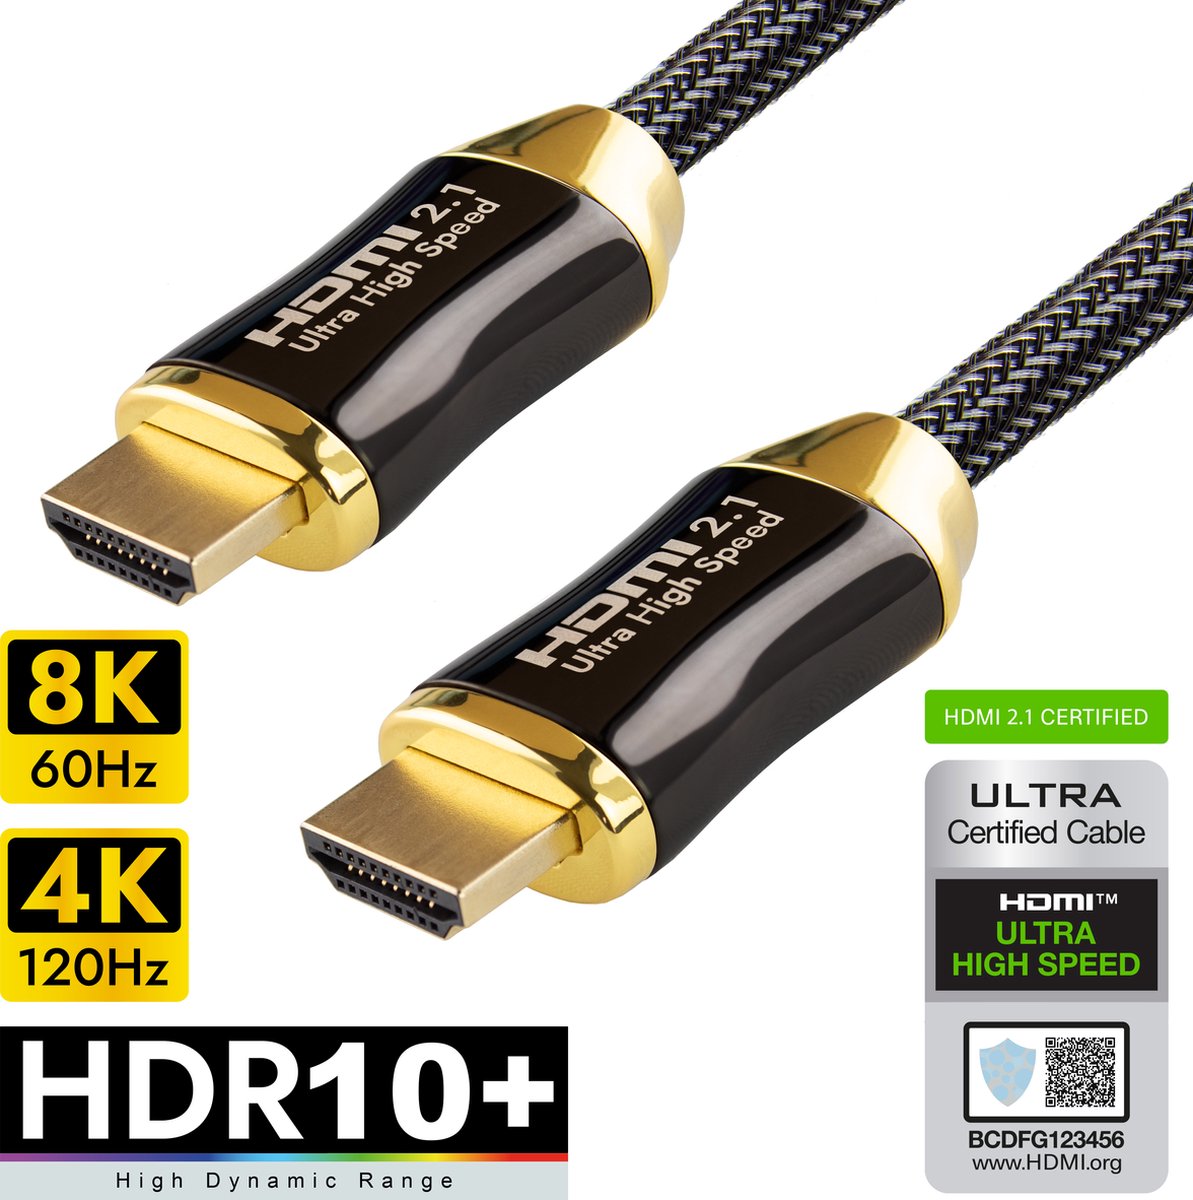 Qnected® HDMI 2.1 kabel 2 meter - 4K@120Hz, 4K@144Hz, 8K@60Hz - HDR10+, Dolby Vision - eARC review